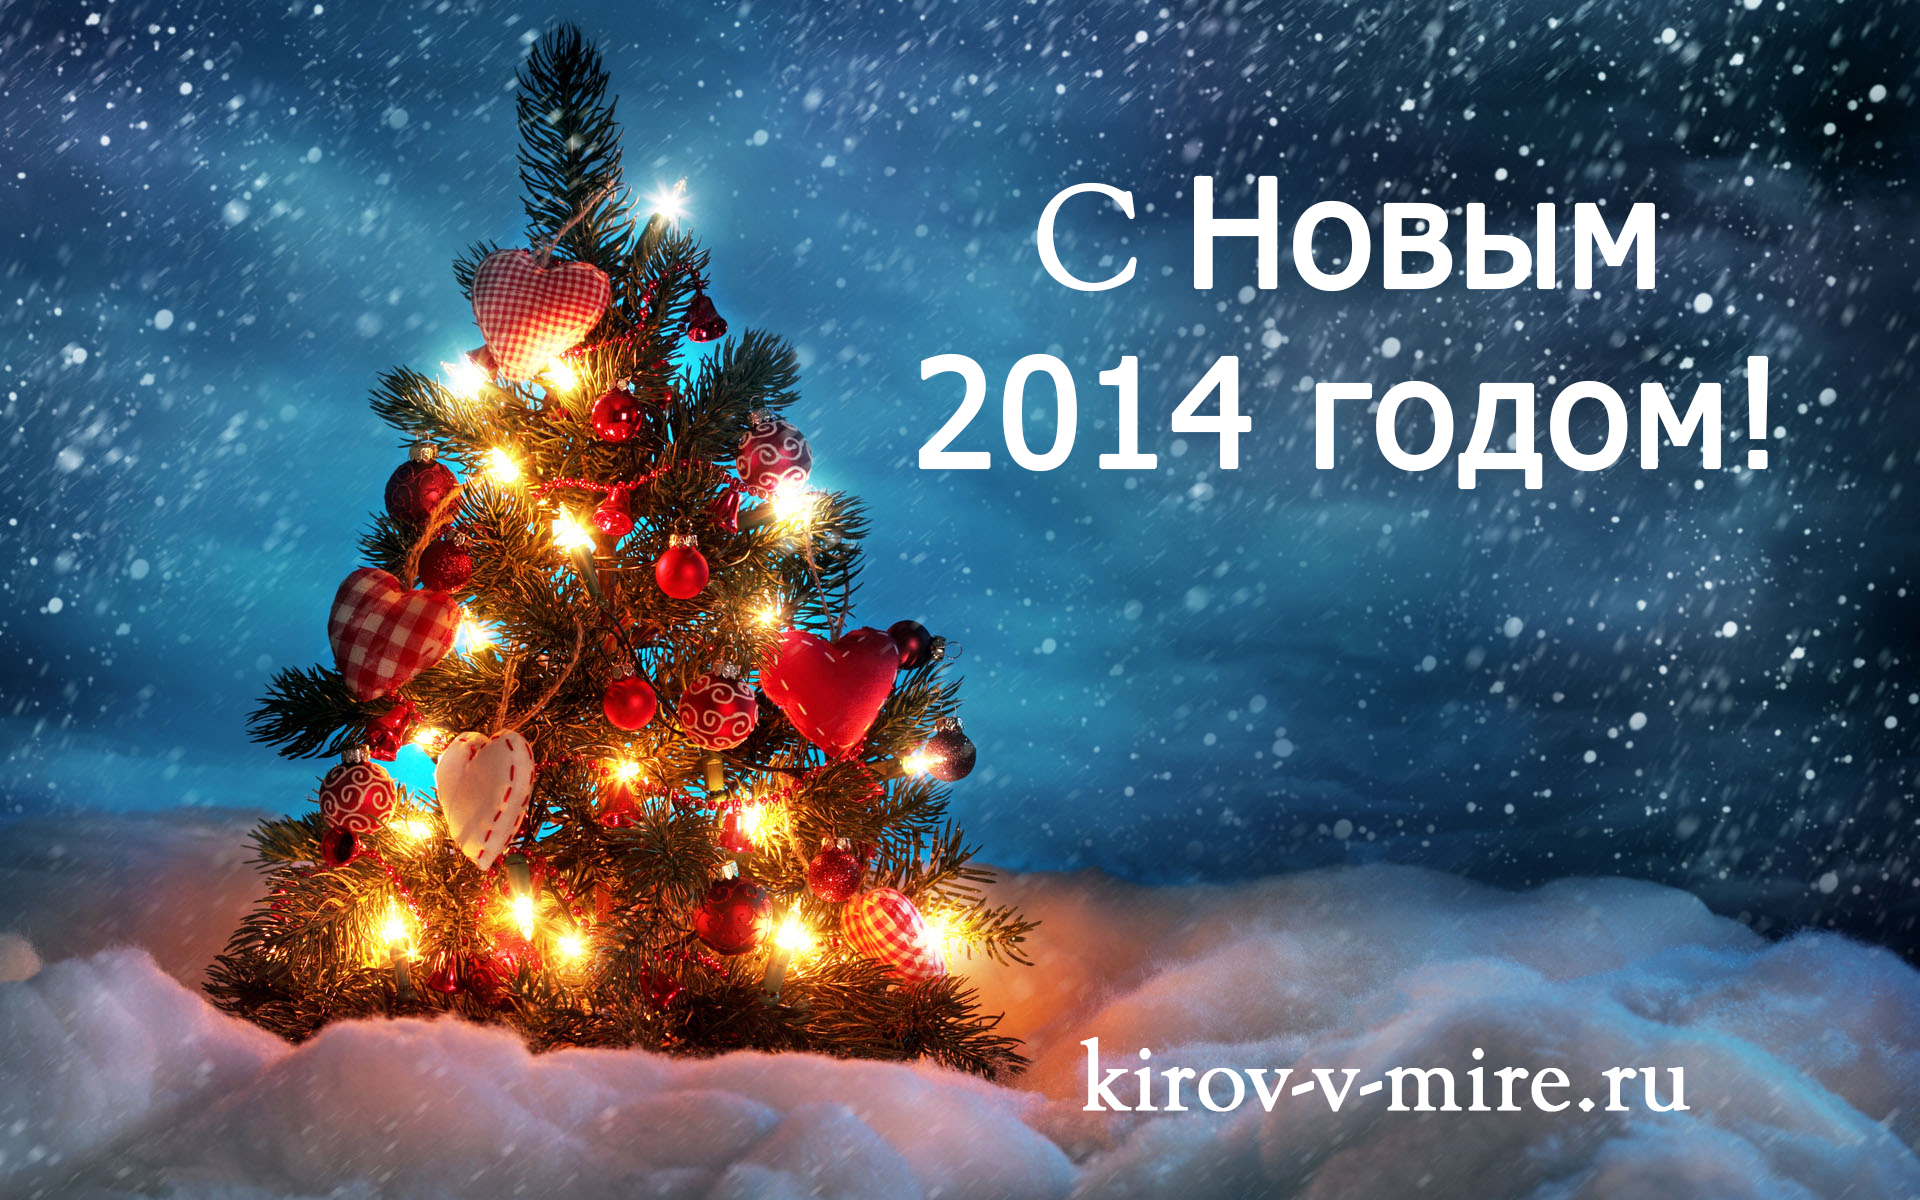 Новый 2014 год в Кирове, Киров новый год, расписание мероприятий